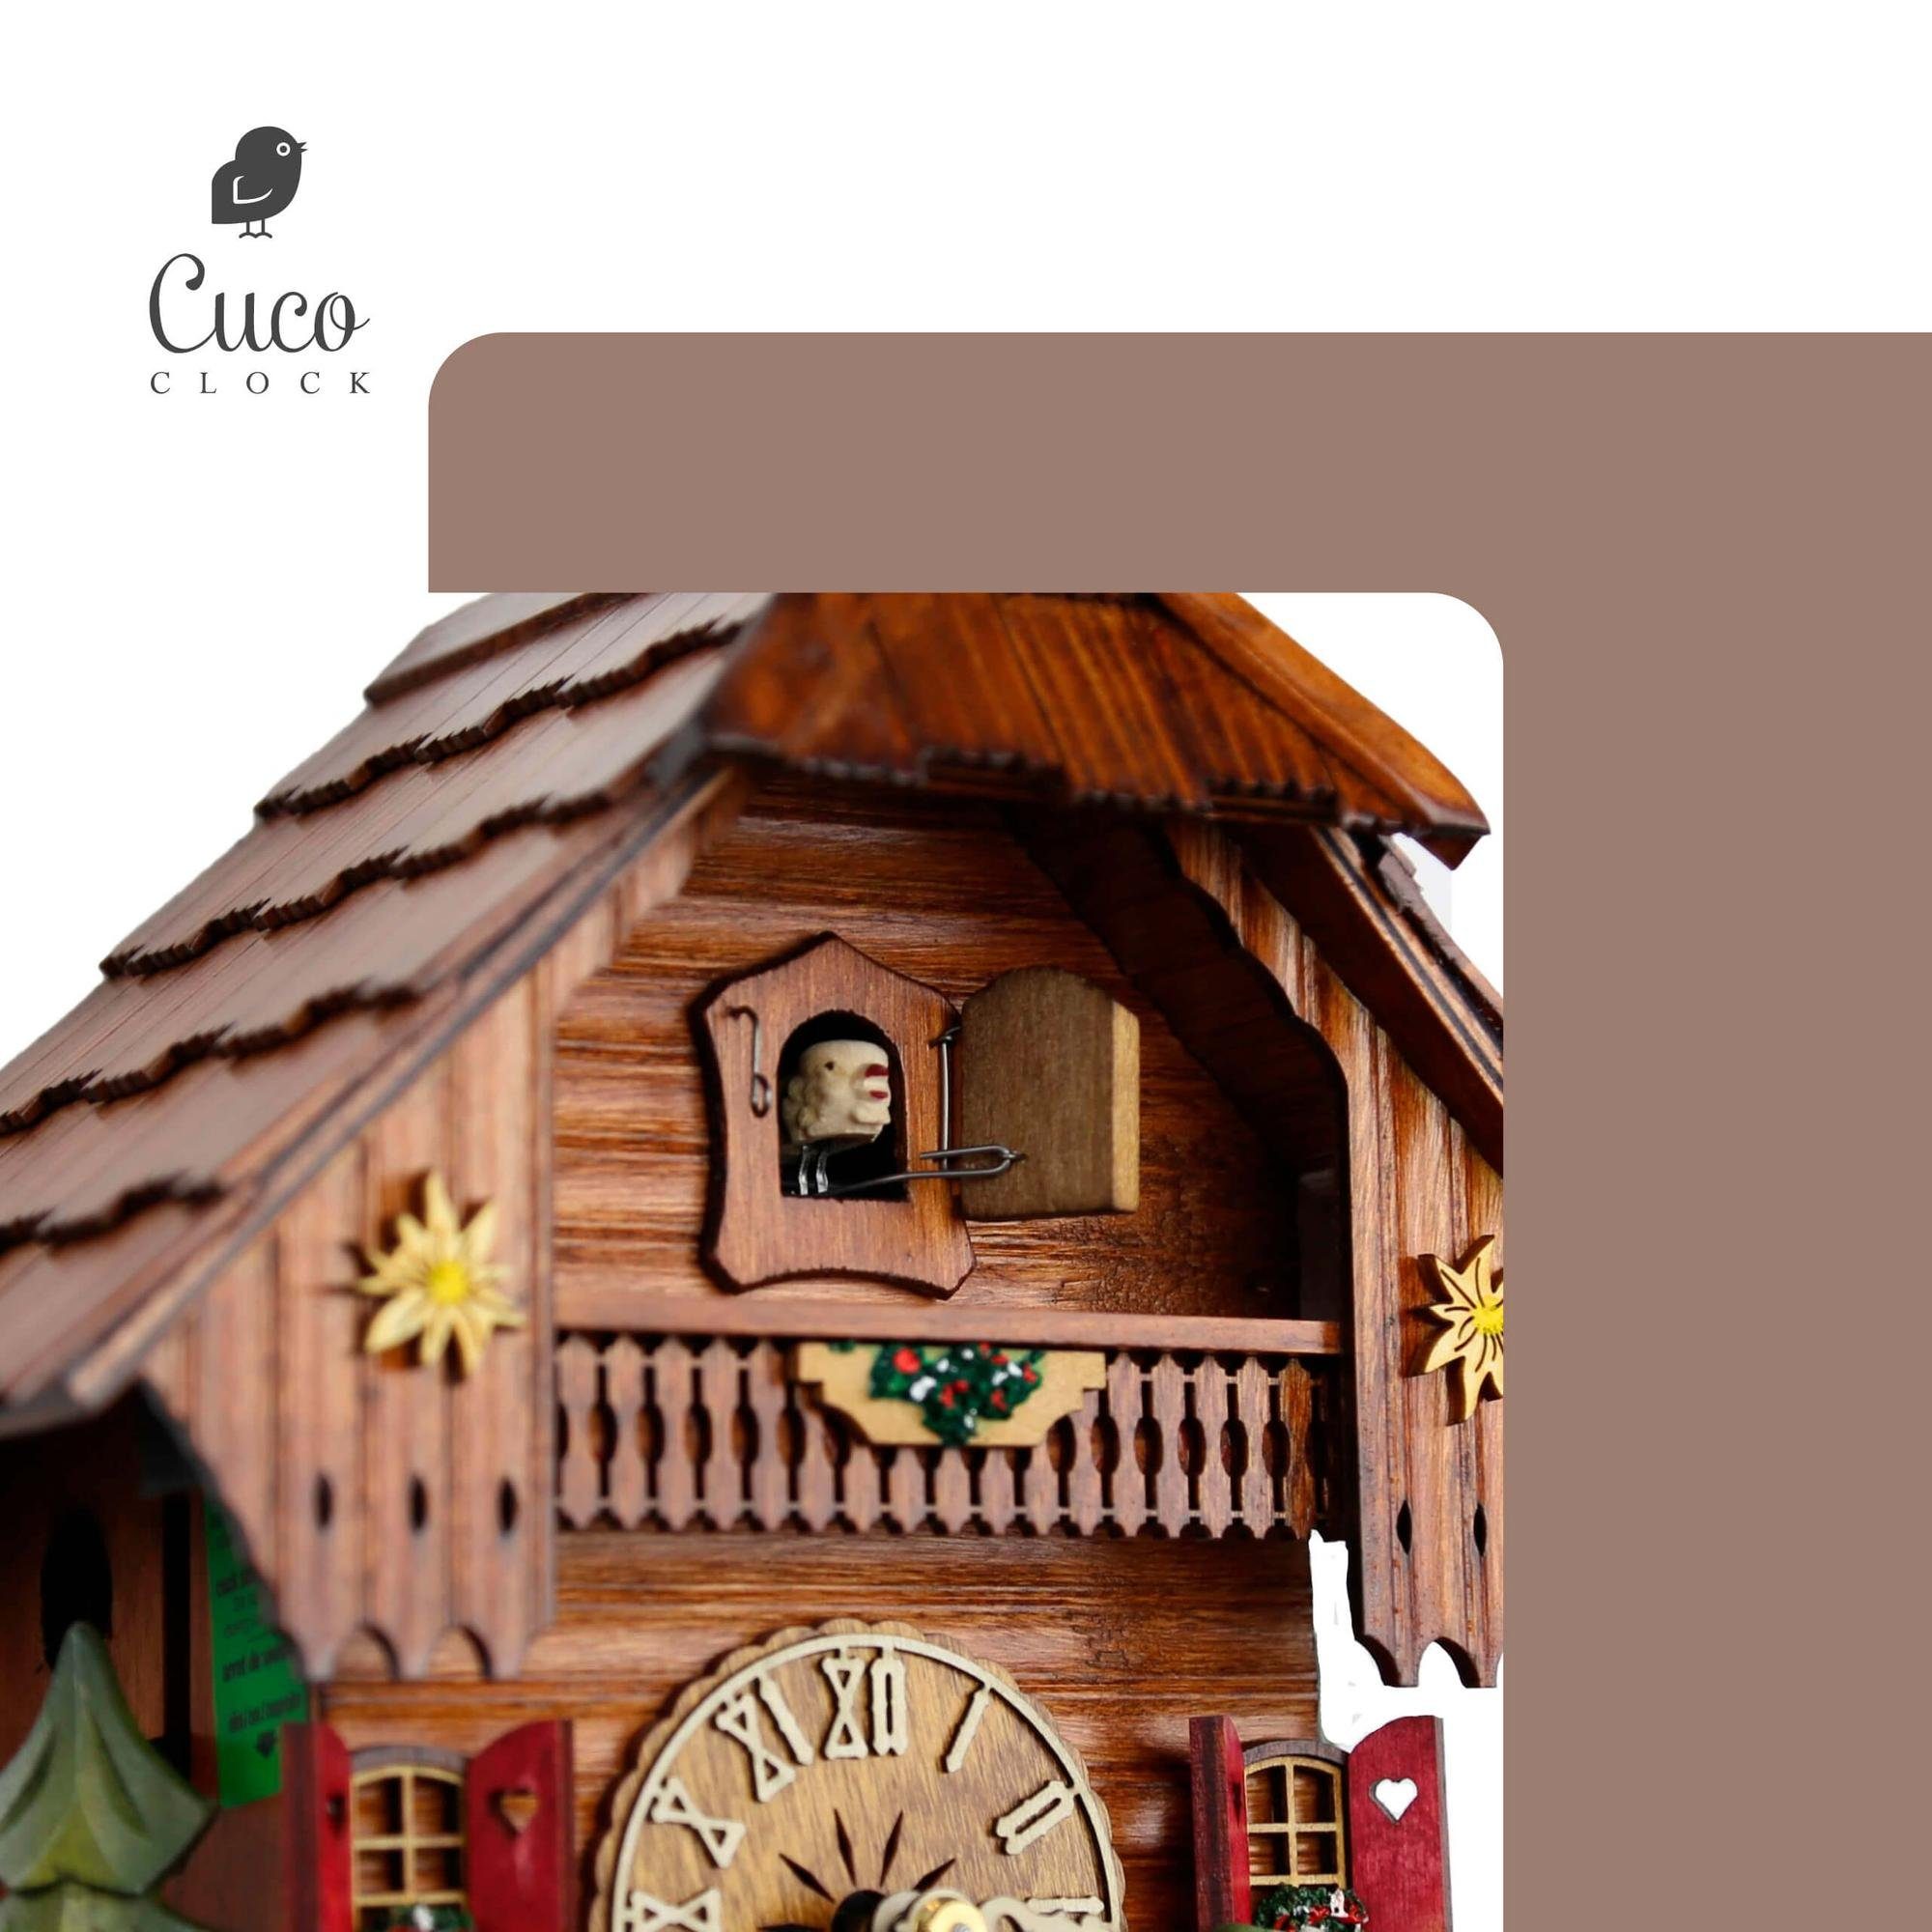 Cuco Clock Pendelwanduhr Kuckucksuhr Tage Holz - 23 1 Nachtabschaltung) (17 Schwarzwalduhr mit Wanduhr "Biertrinker Werk, aus manuelle x 26cm, Hund" x